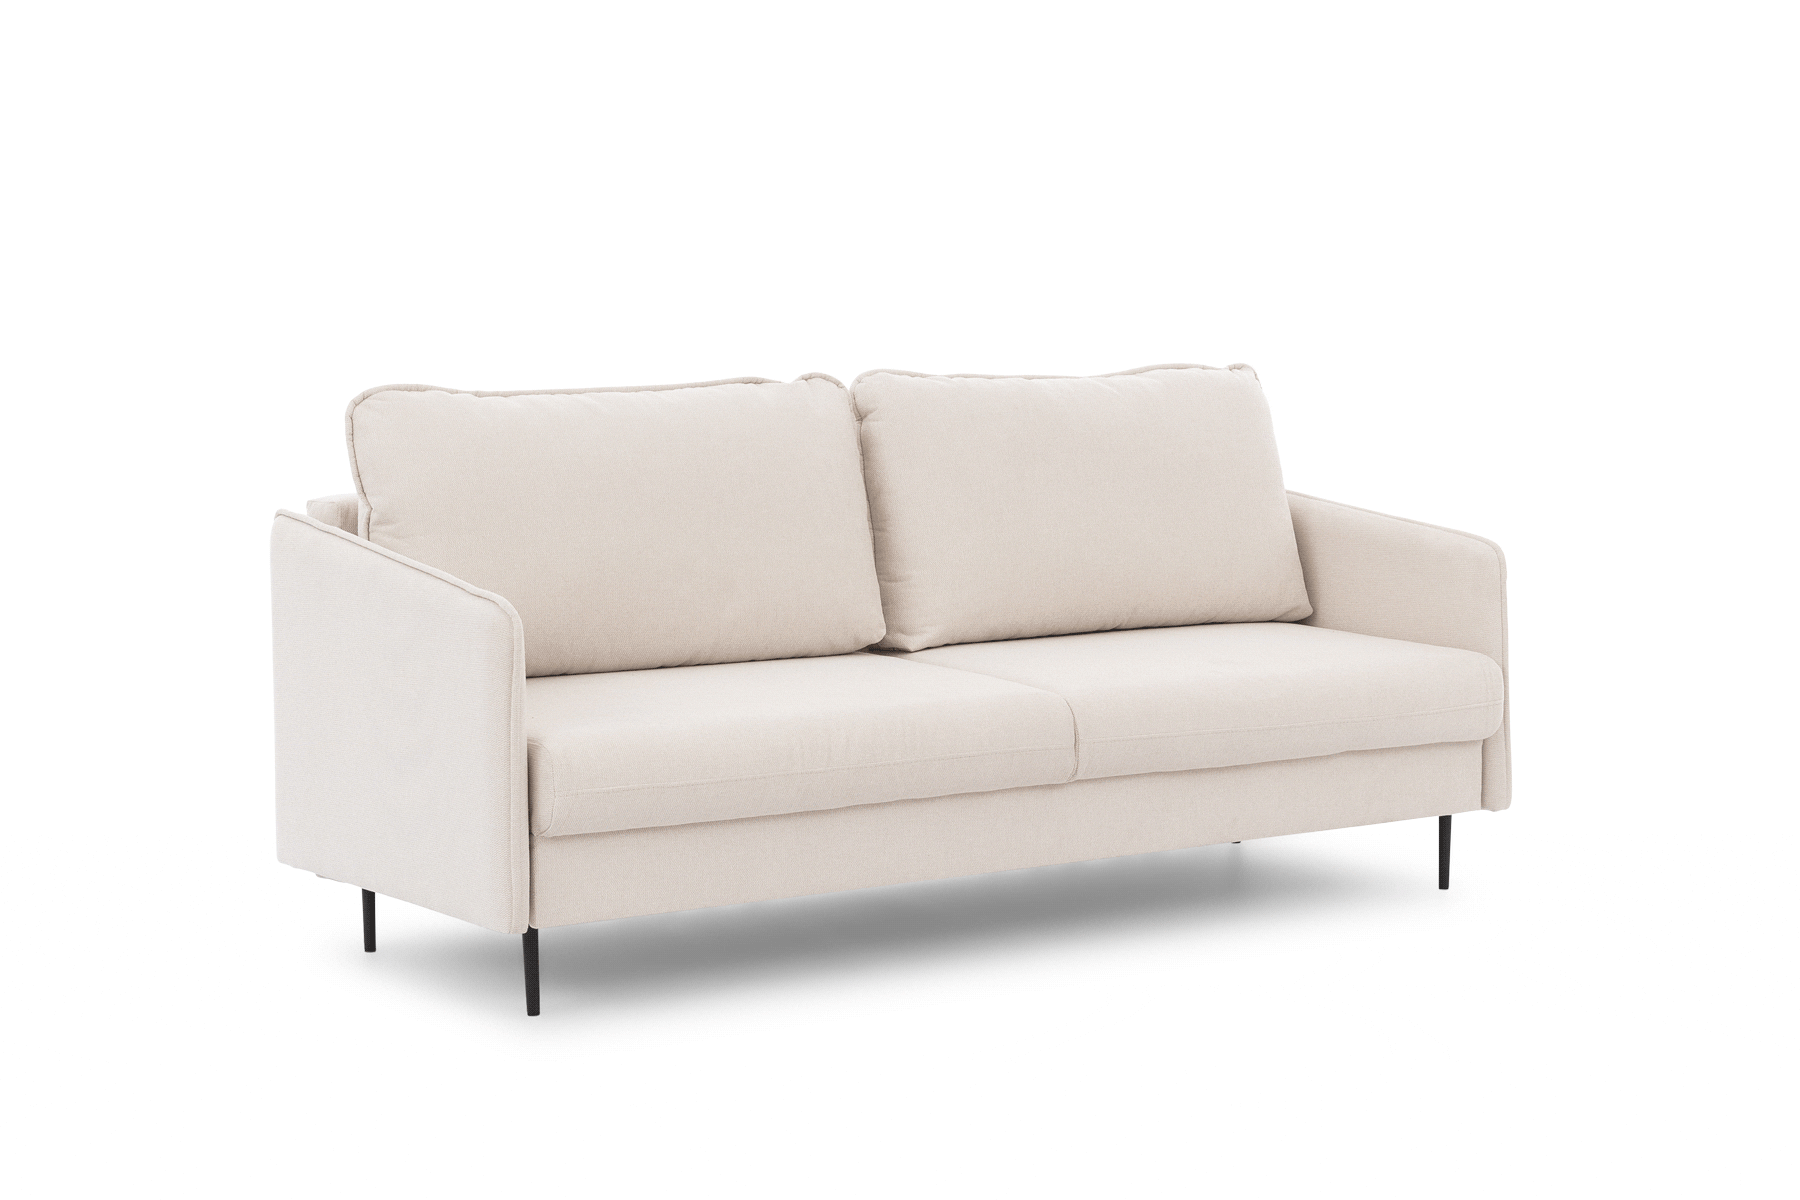 Taila kinyitható kanapé - Velutto 15, arany lábak Taila kinyitható kanapé